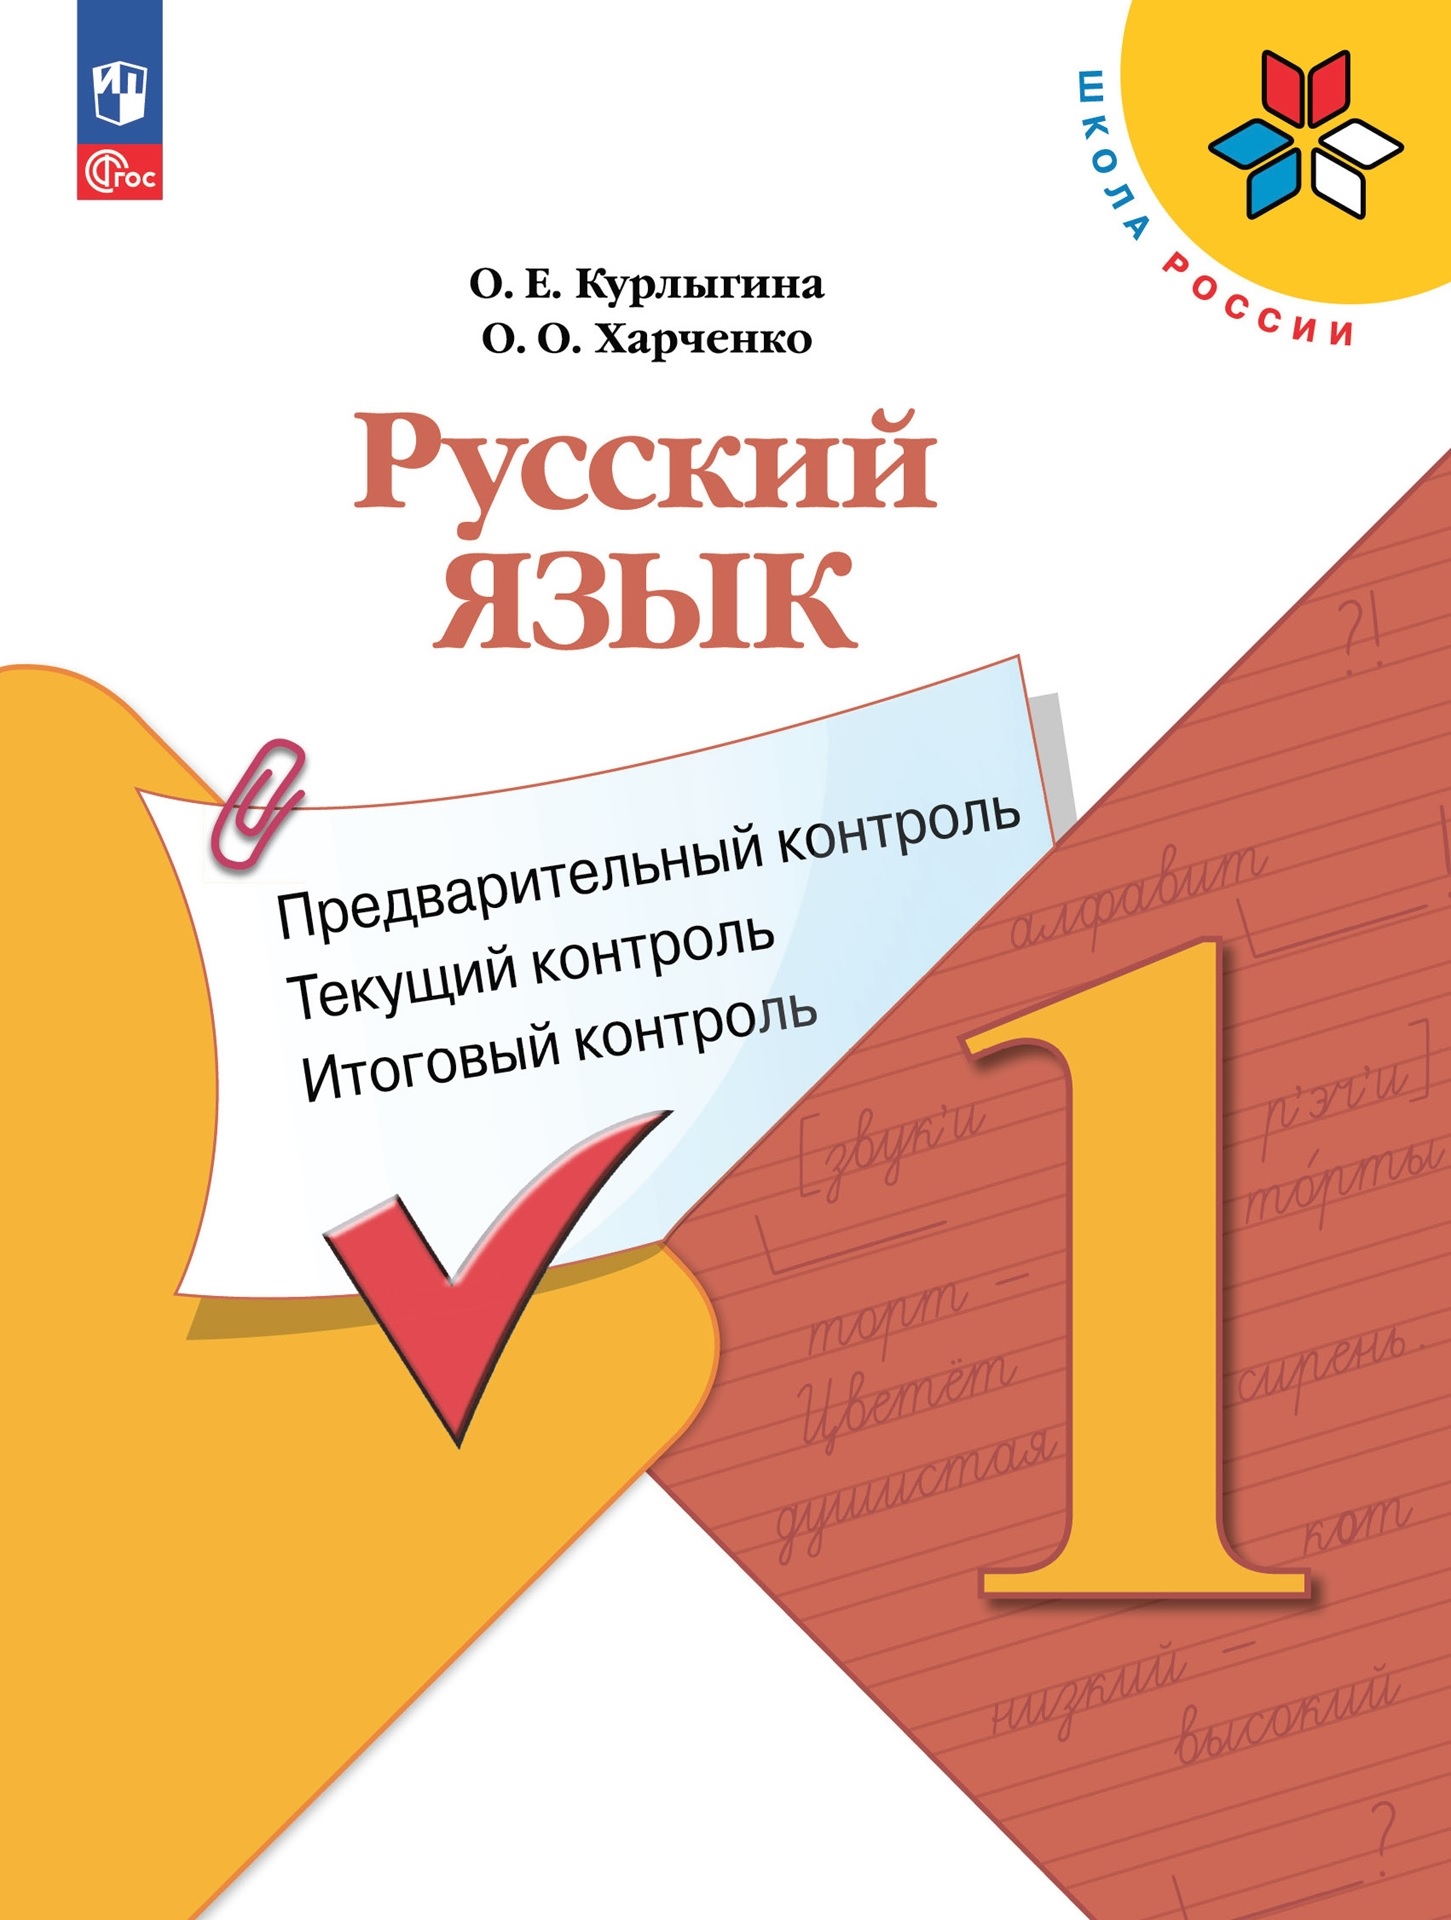 контроль Русский язык: предварительный контроль, текущий контроль, итоговый контроль. 1 класс